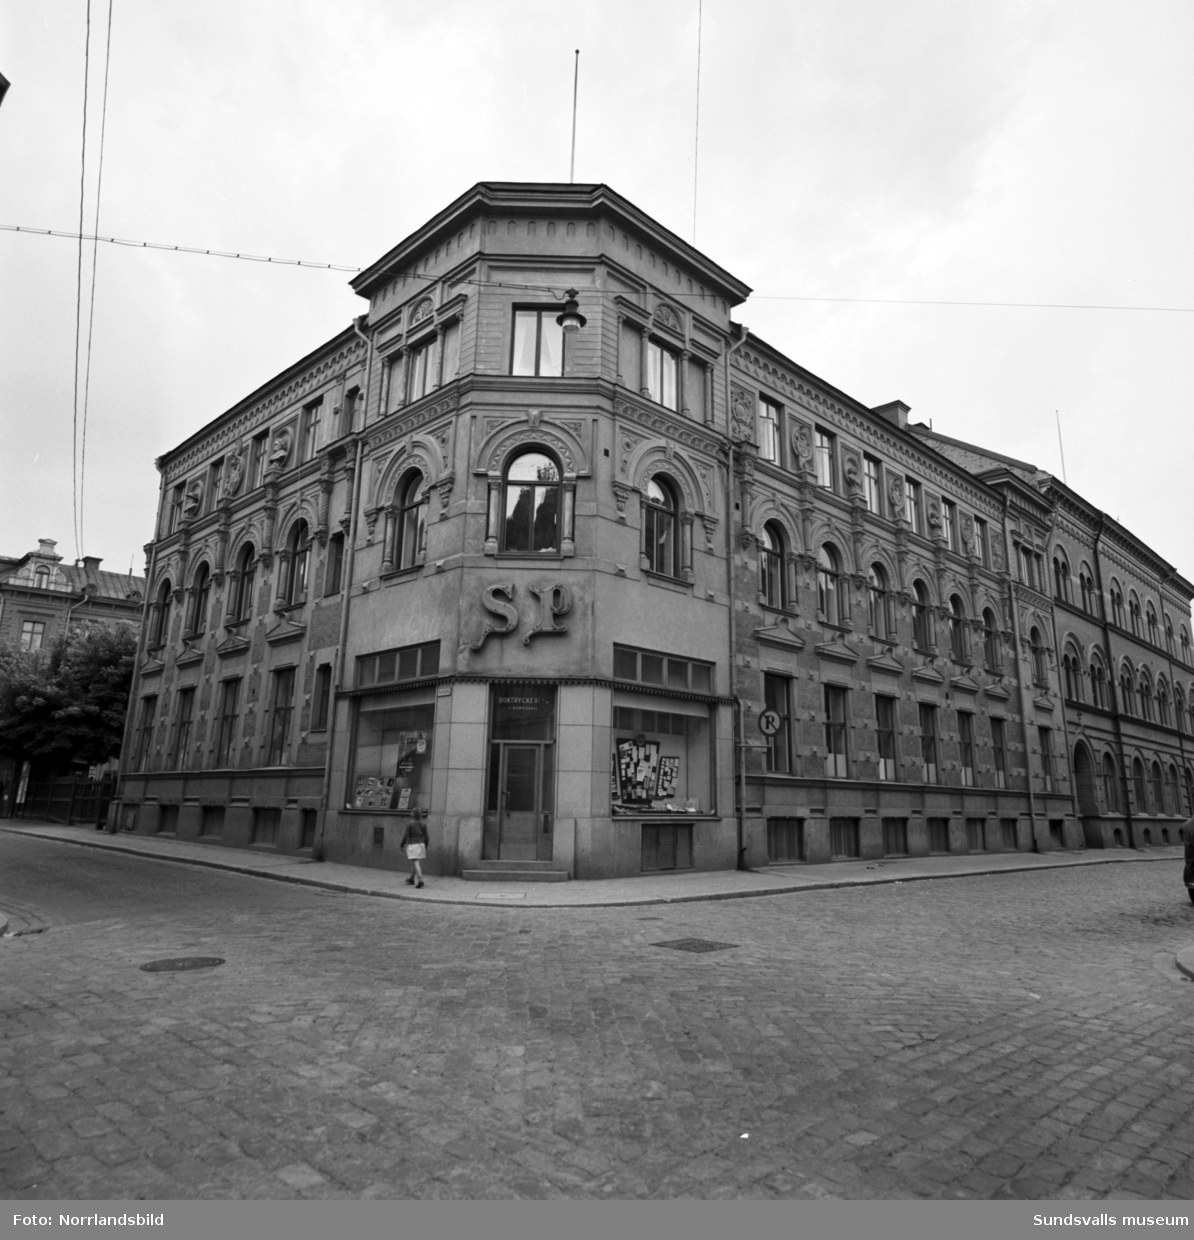 SP, Sundsvallsposten, boktryckeri, hörnet Rådhusgatan och Bankgatan. Exteriörbild.